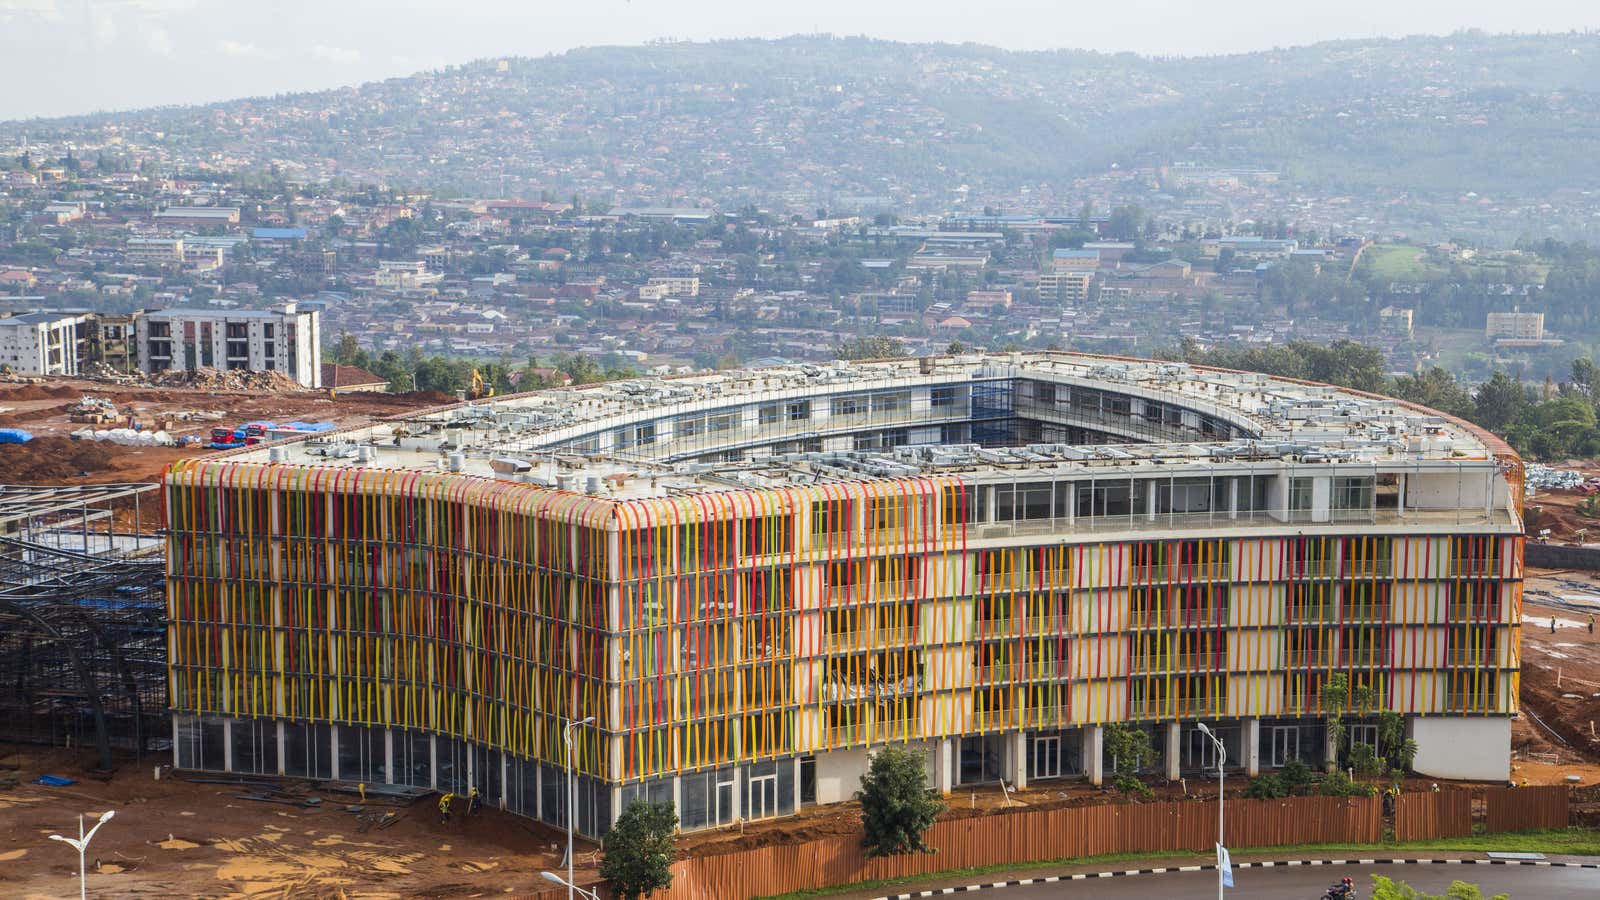 Kigali’s Radisson Blu Hotel—still under construction.